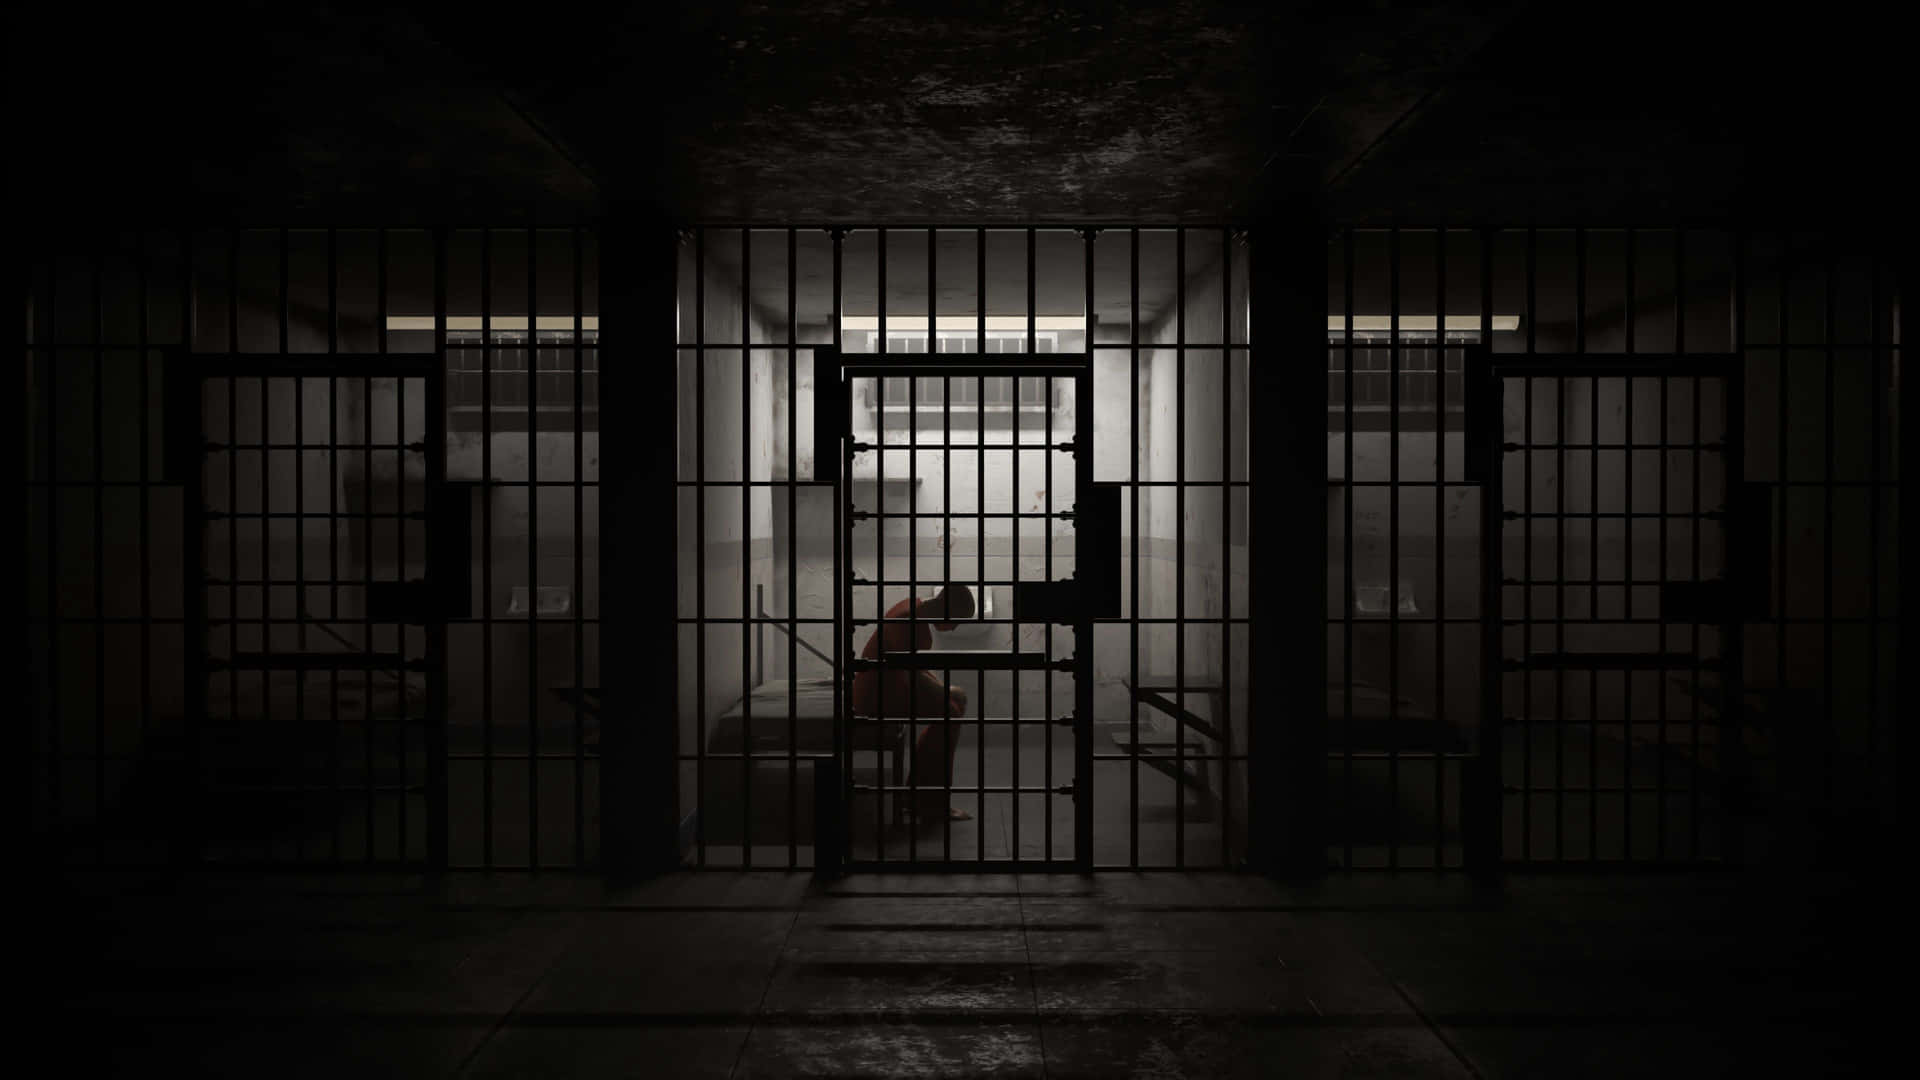 Unacella Di Prigione Con Una Persona In Piedi All'interno